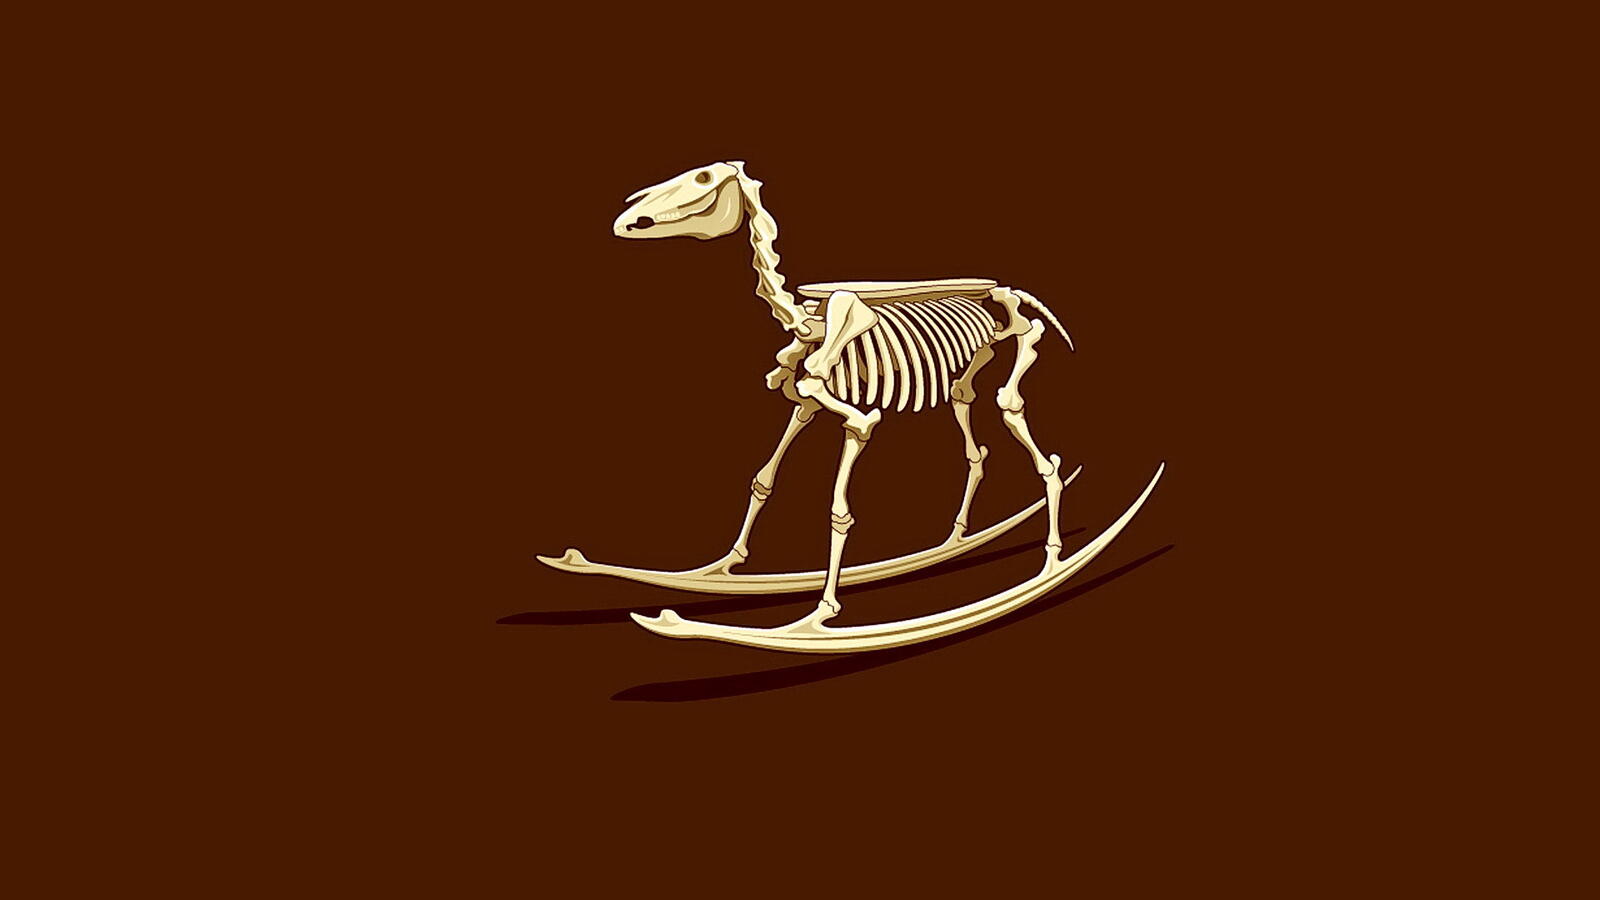 Бесплатное фото Детская качалка скелет лошади на коричневом фоне